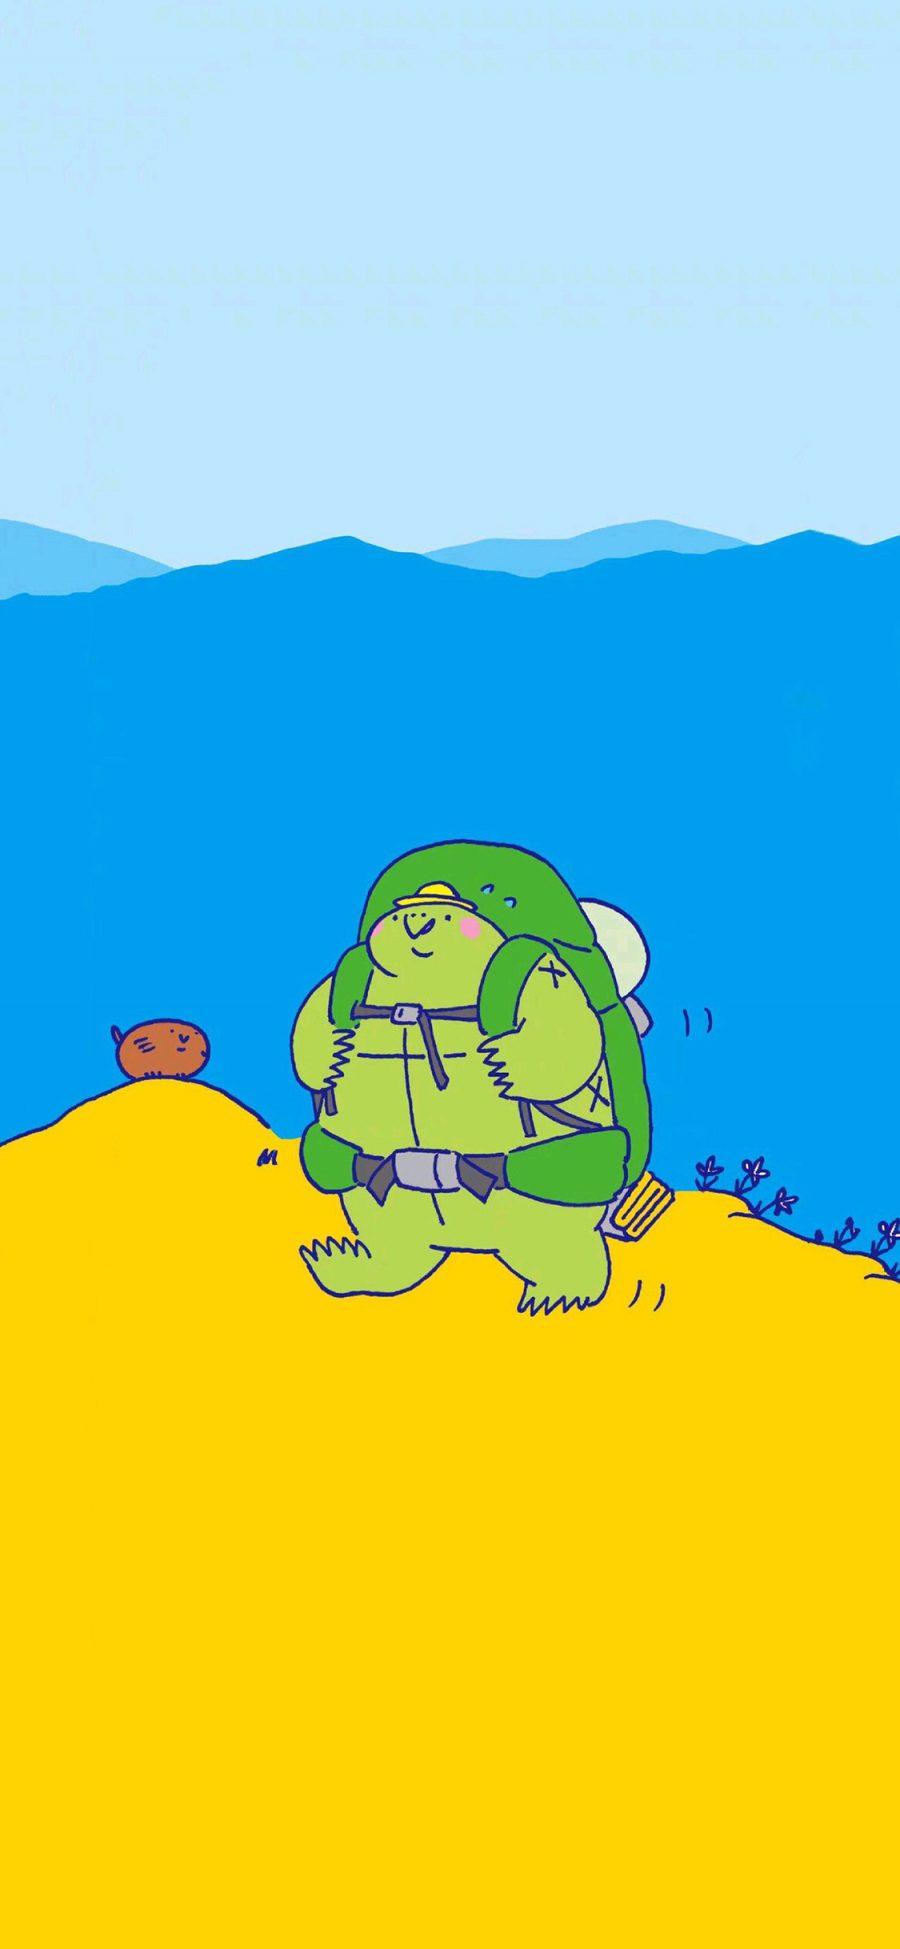 [2436×1125]卡通 大青蛙 背包 旅行 可爱 苹果手机动漫壁纸图片